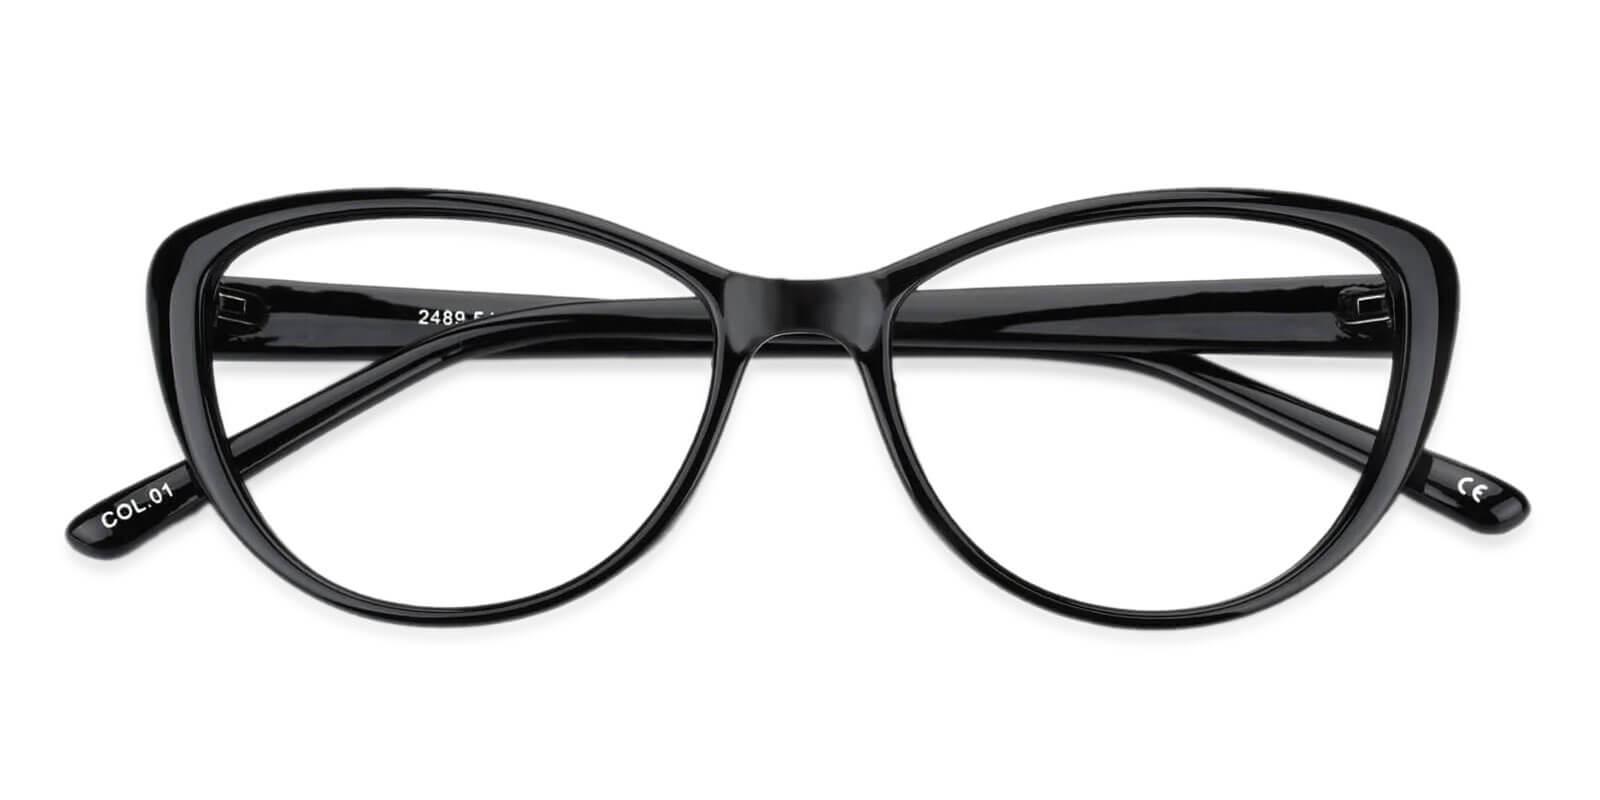 Olga Black Plastic Eyeglasses Frames from ABBE Glasses